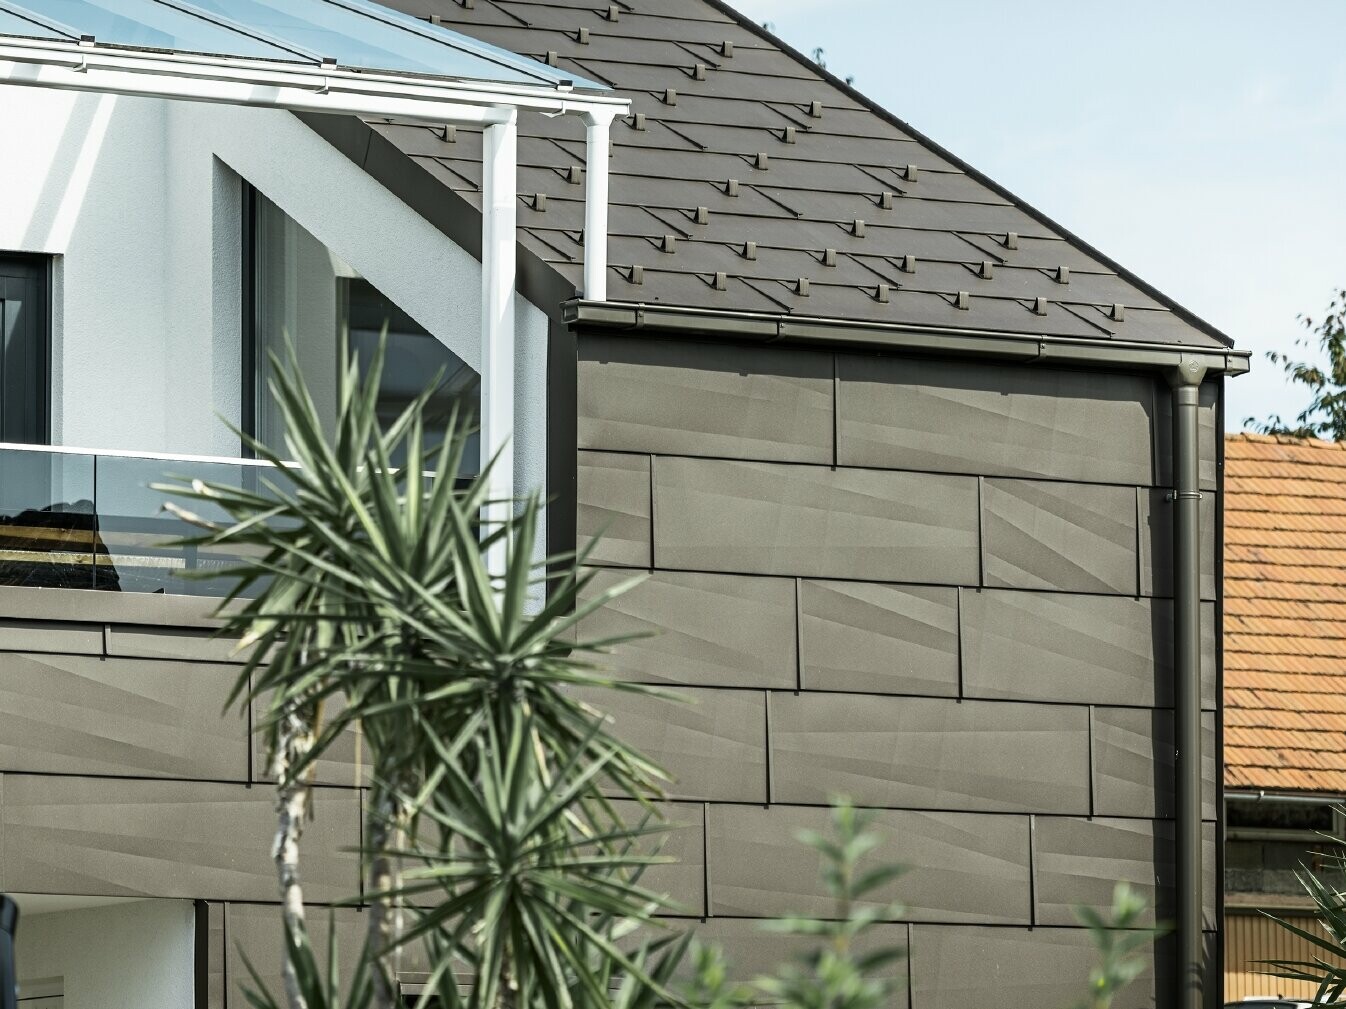 Extension avec terrasse de toit revêtue du système complet PREFA ; pour le toit et la façade, le choix s'est porté sur le panneau de toiture et de façade FX.12 PREFA. Pour l'écoulement des eaux de pluie, le choix s'est également porté sur la gouttière carrée PREFA avec tuyau de descente PREFA et accessoires complets en brun.